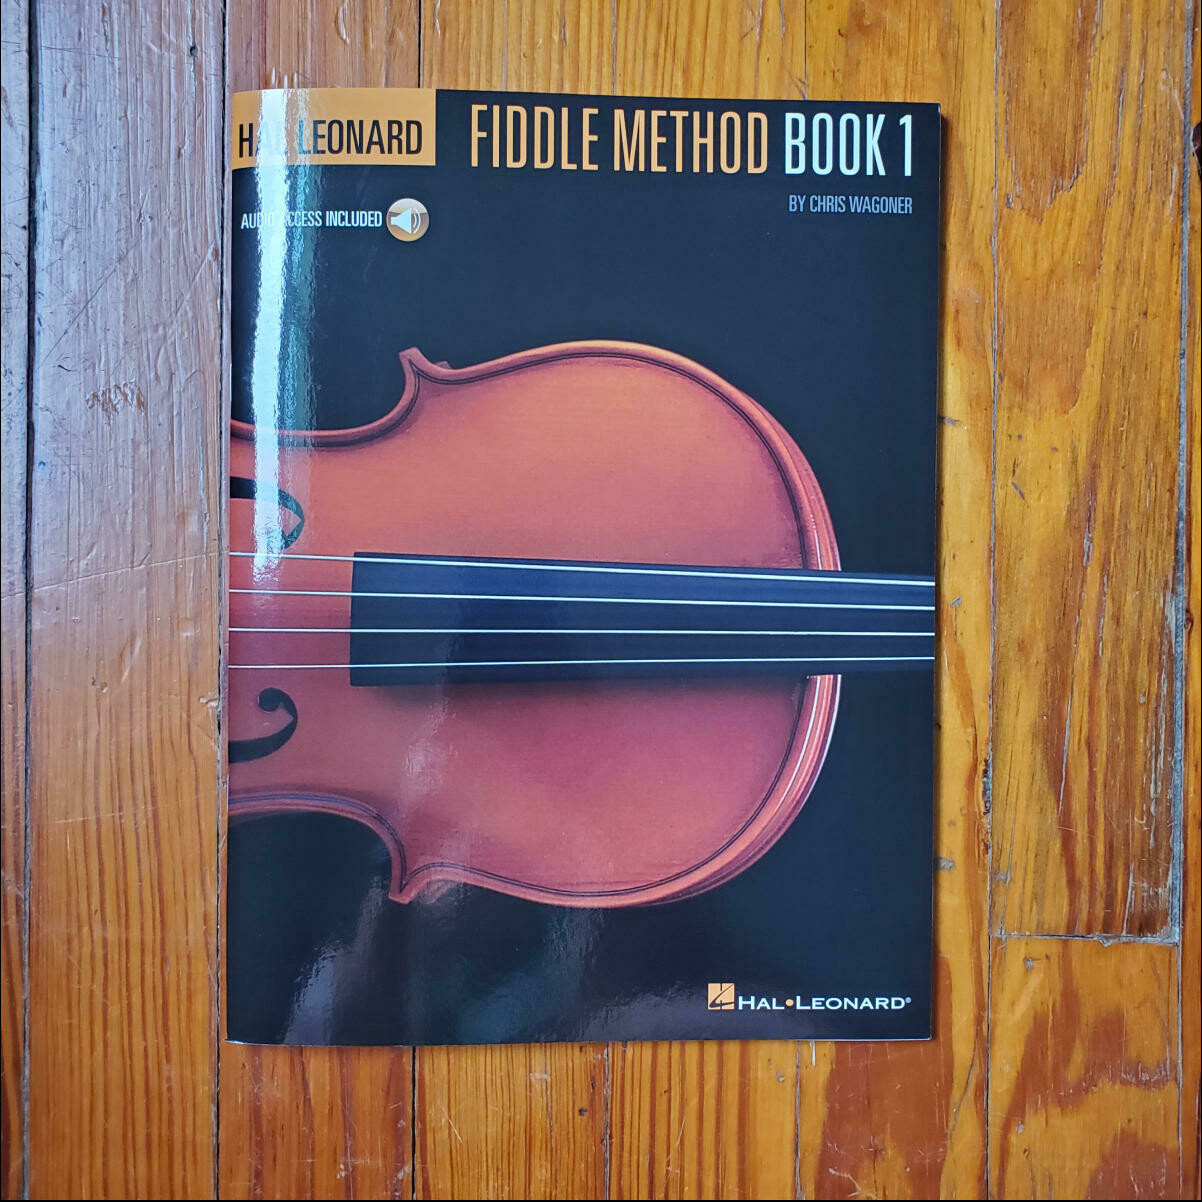 HL Fiddle Method Book 1 by: Chris Wagoner